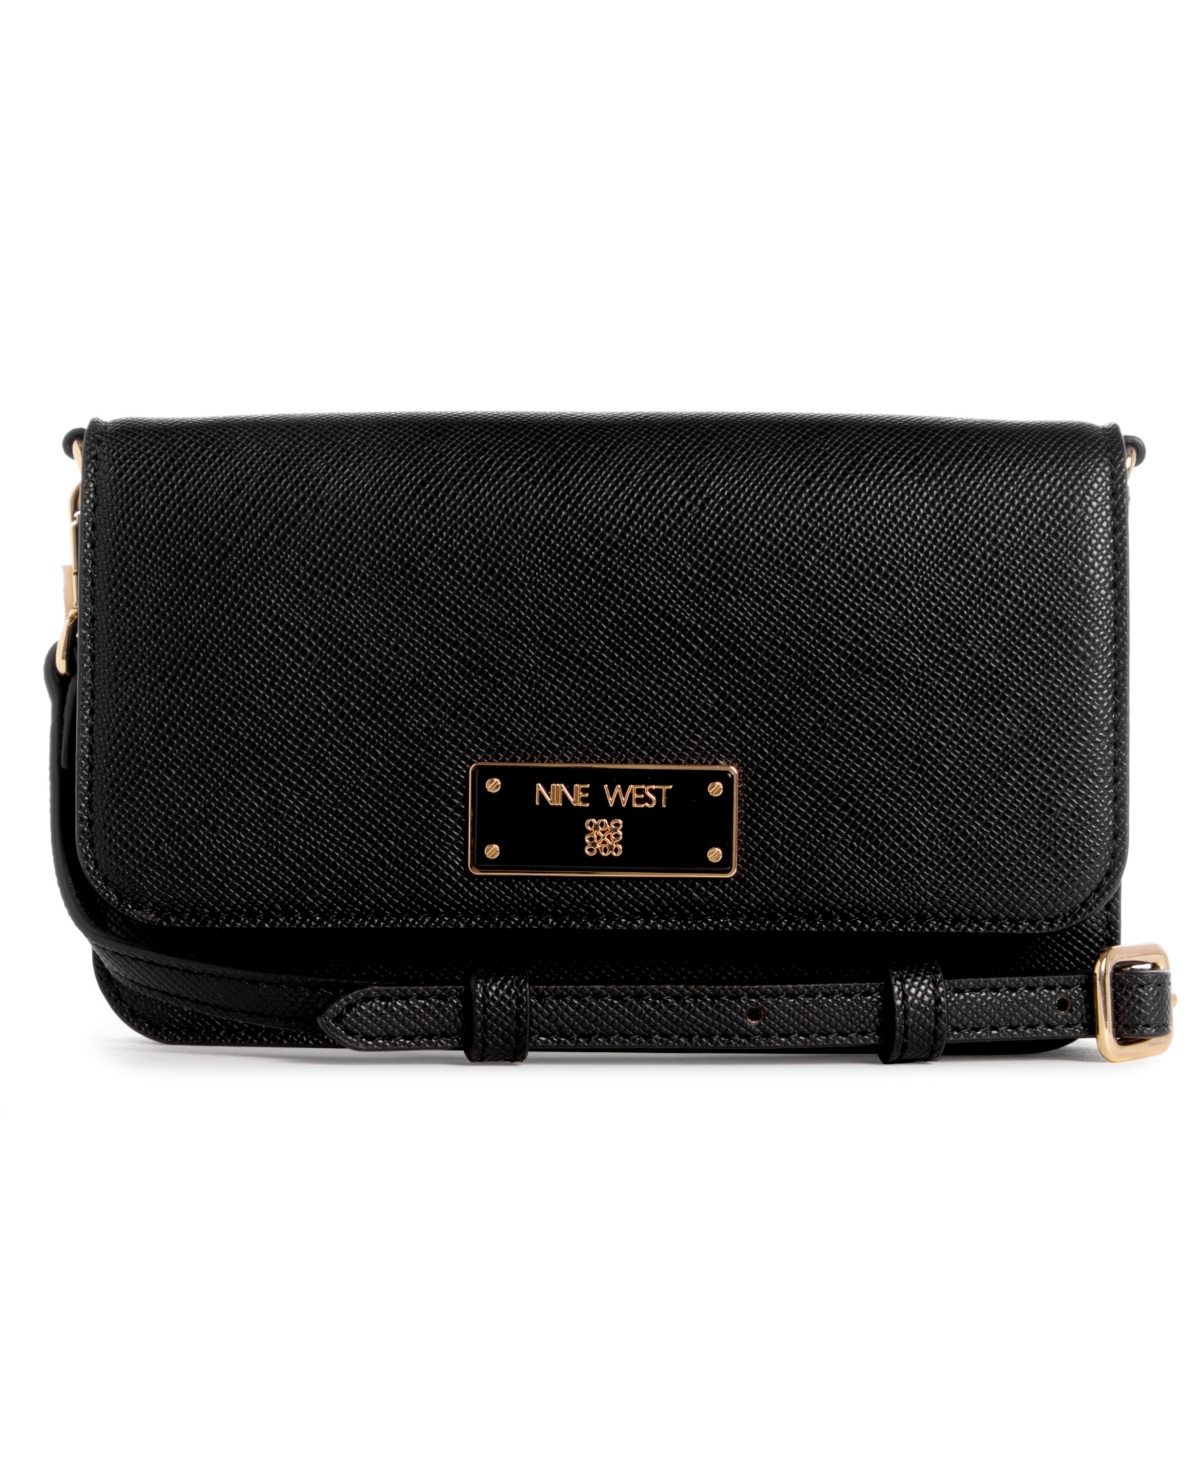 Brodie Phone Wallet Crossbody Bag - Black